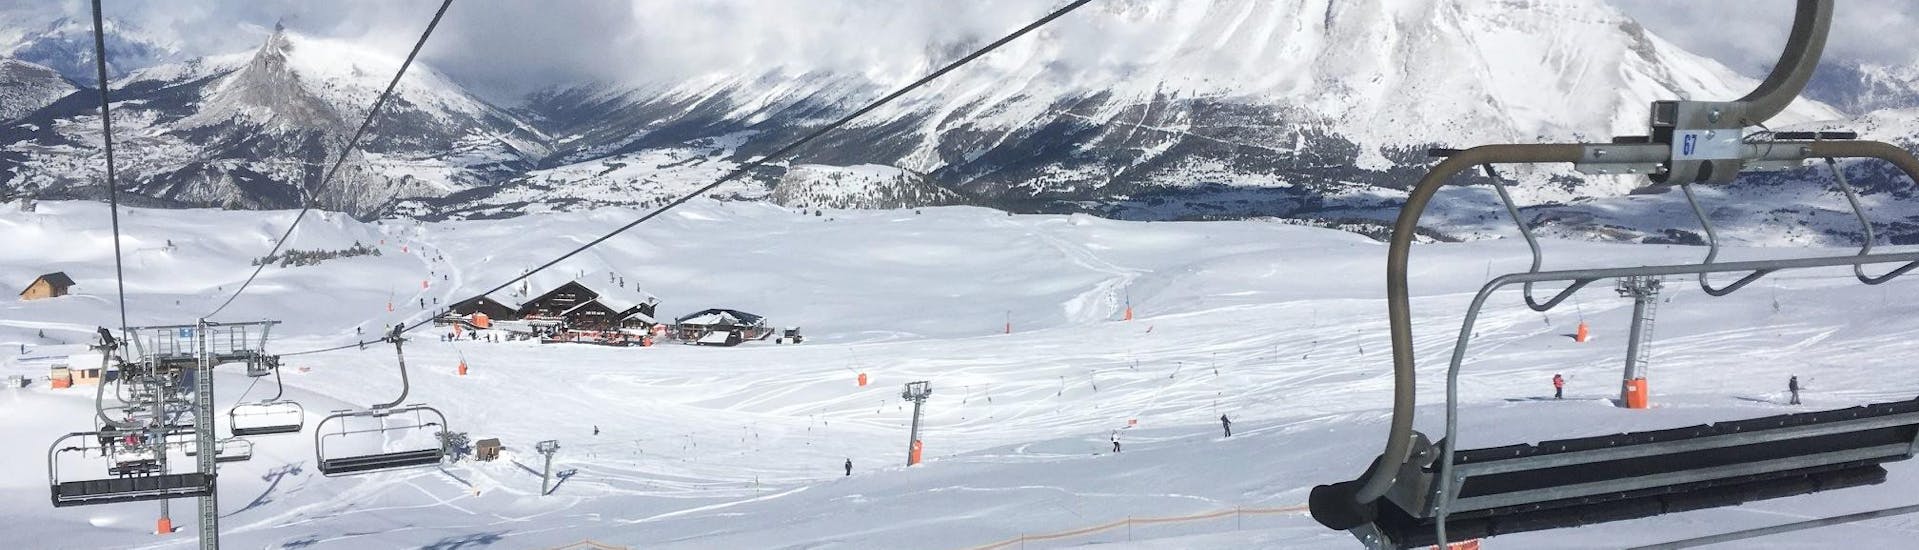 Une vue sur le massif enneigé du Dévoluy où l'ESI Dévoluy proposent des cours de ski depuis l'une des remontées mécaniques.